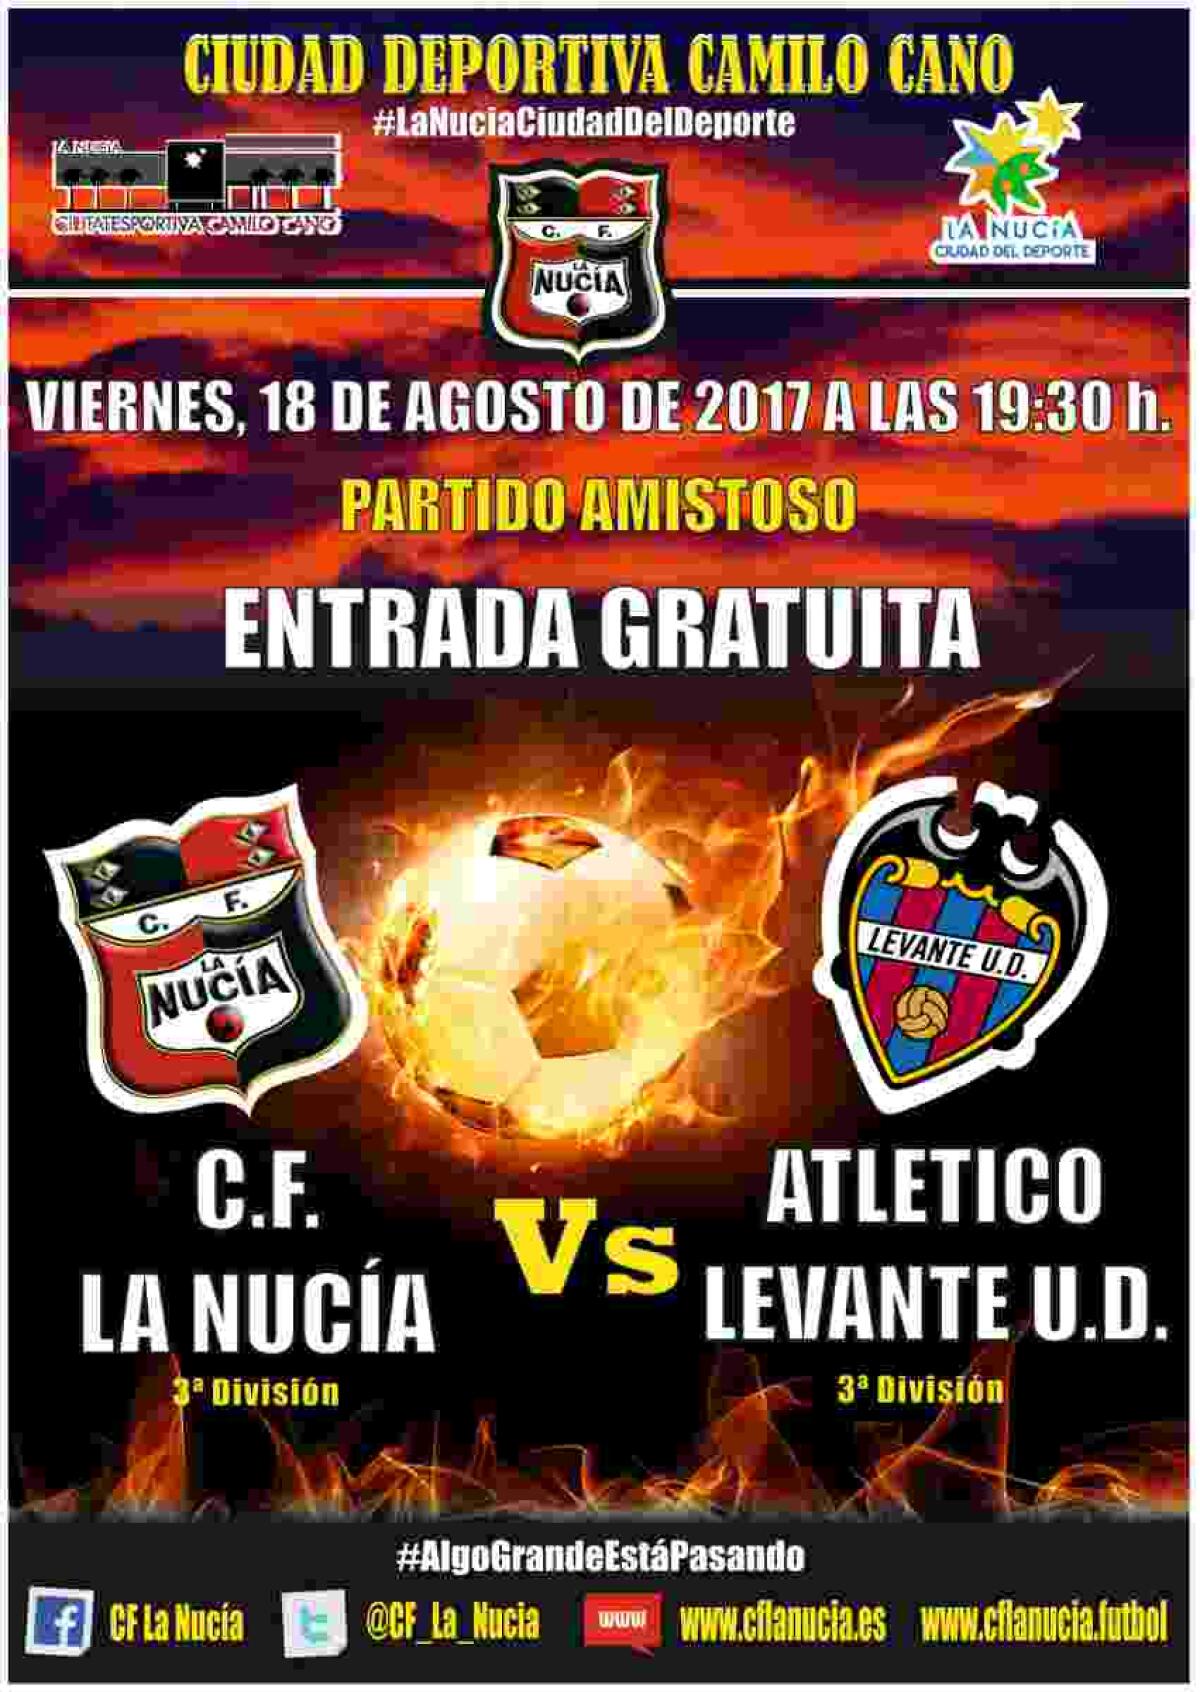 El C.F. La Nucia jugará contra el Levante U.D. de 3ª División en su presentación el 20 de julio